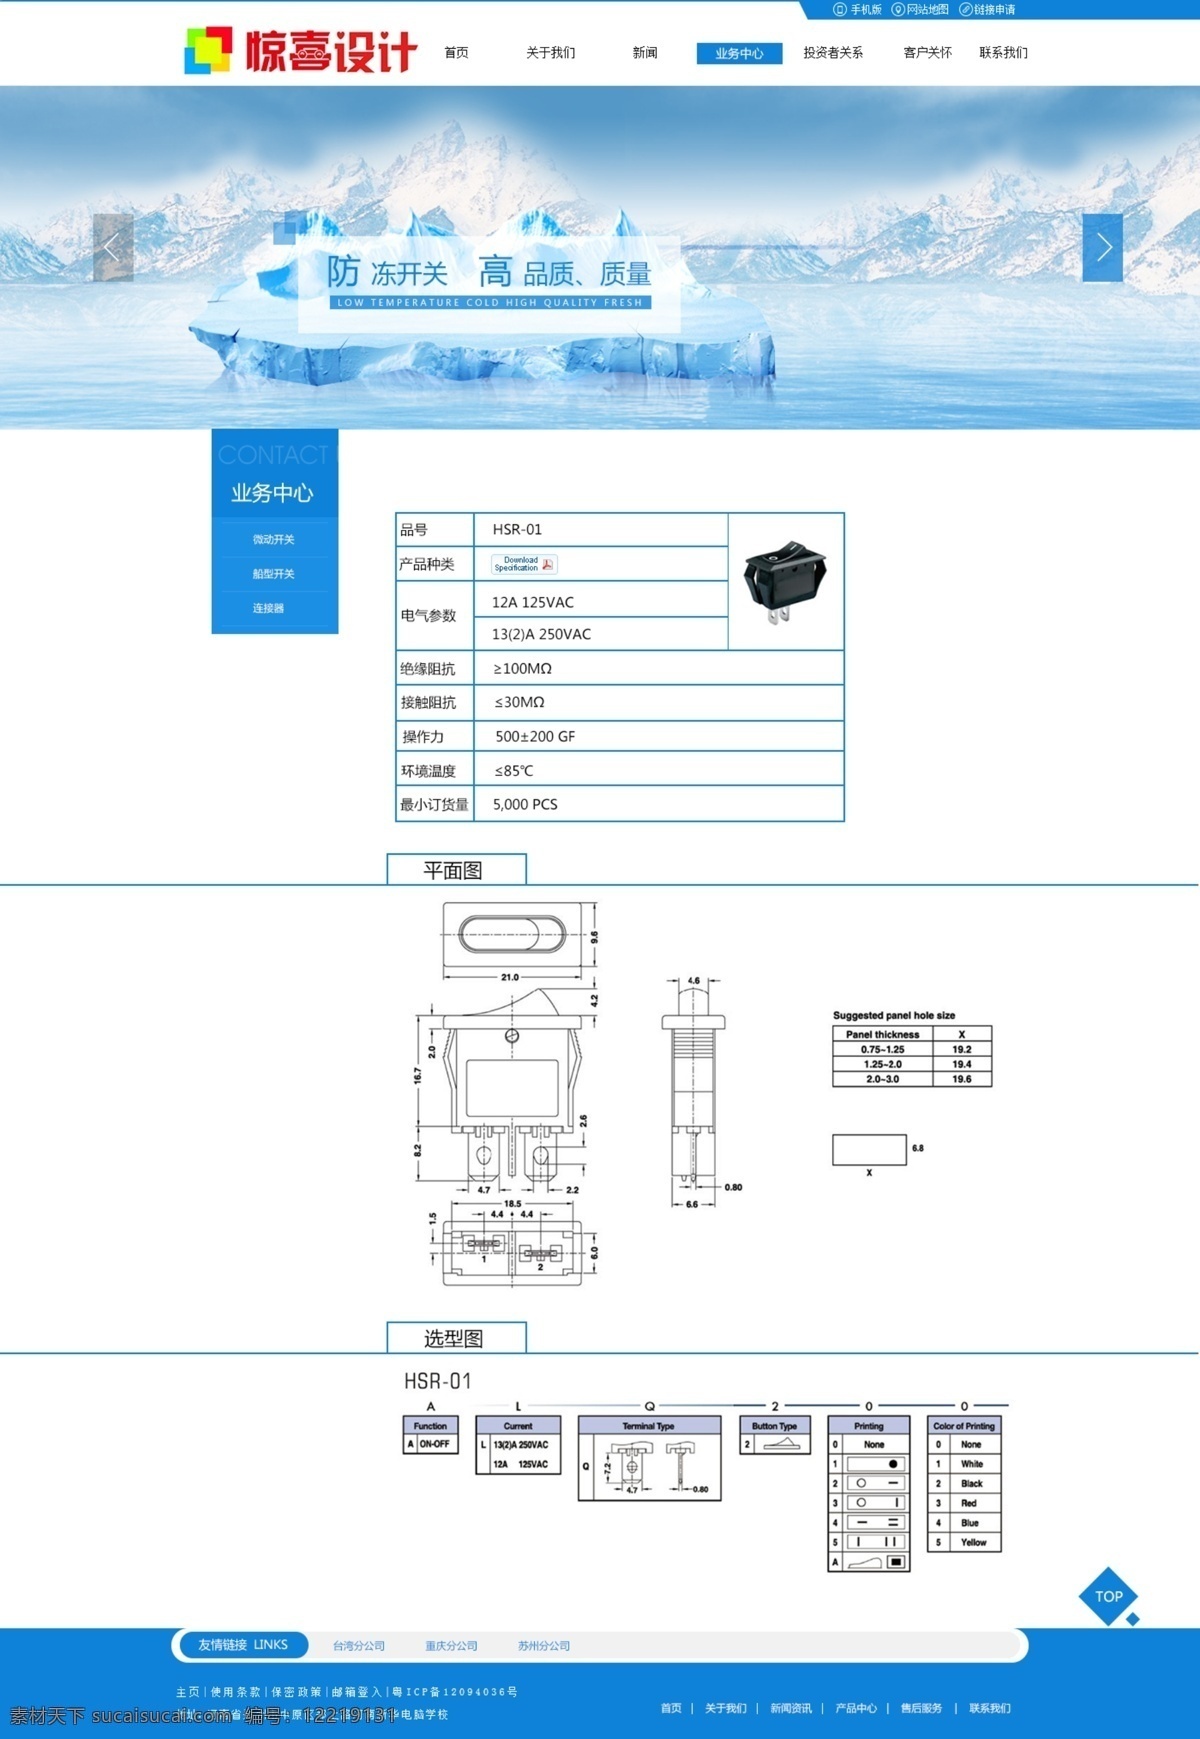 电子元件 企业 产品 三级 页面 模版 网站 蓝色 企业网站 大方网站模板 电子元件企业 电子元件研发 电子元件素材 天蓝色模版